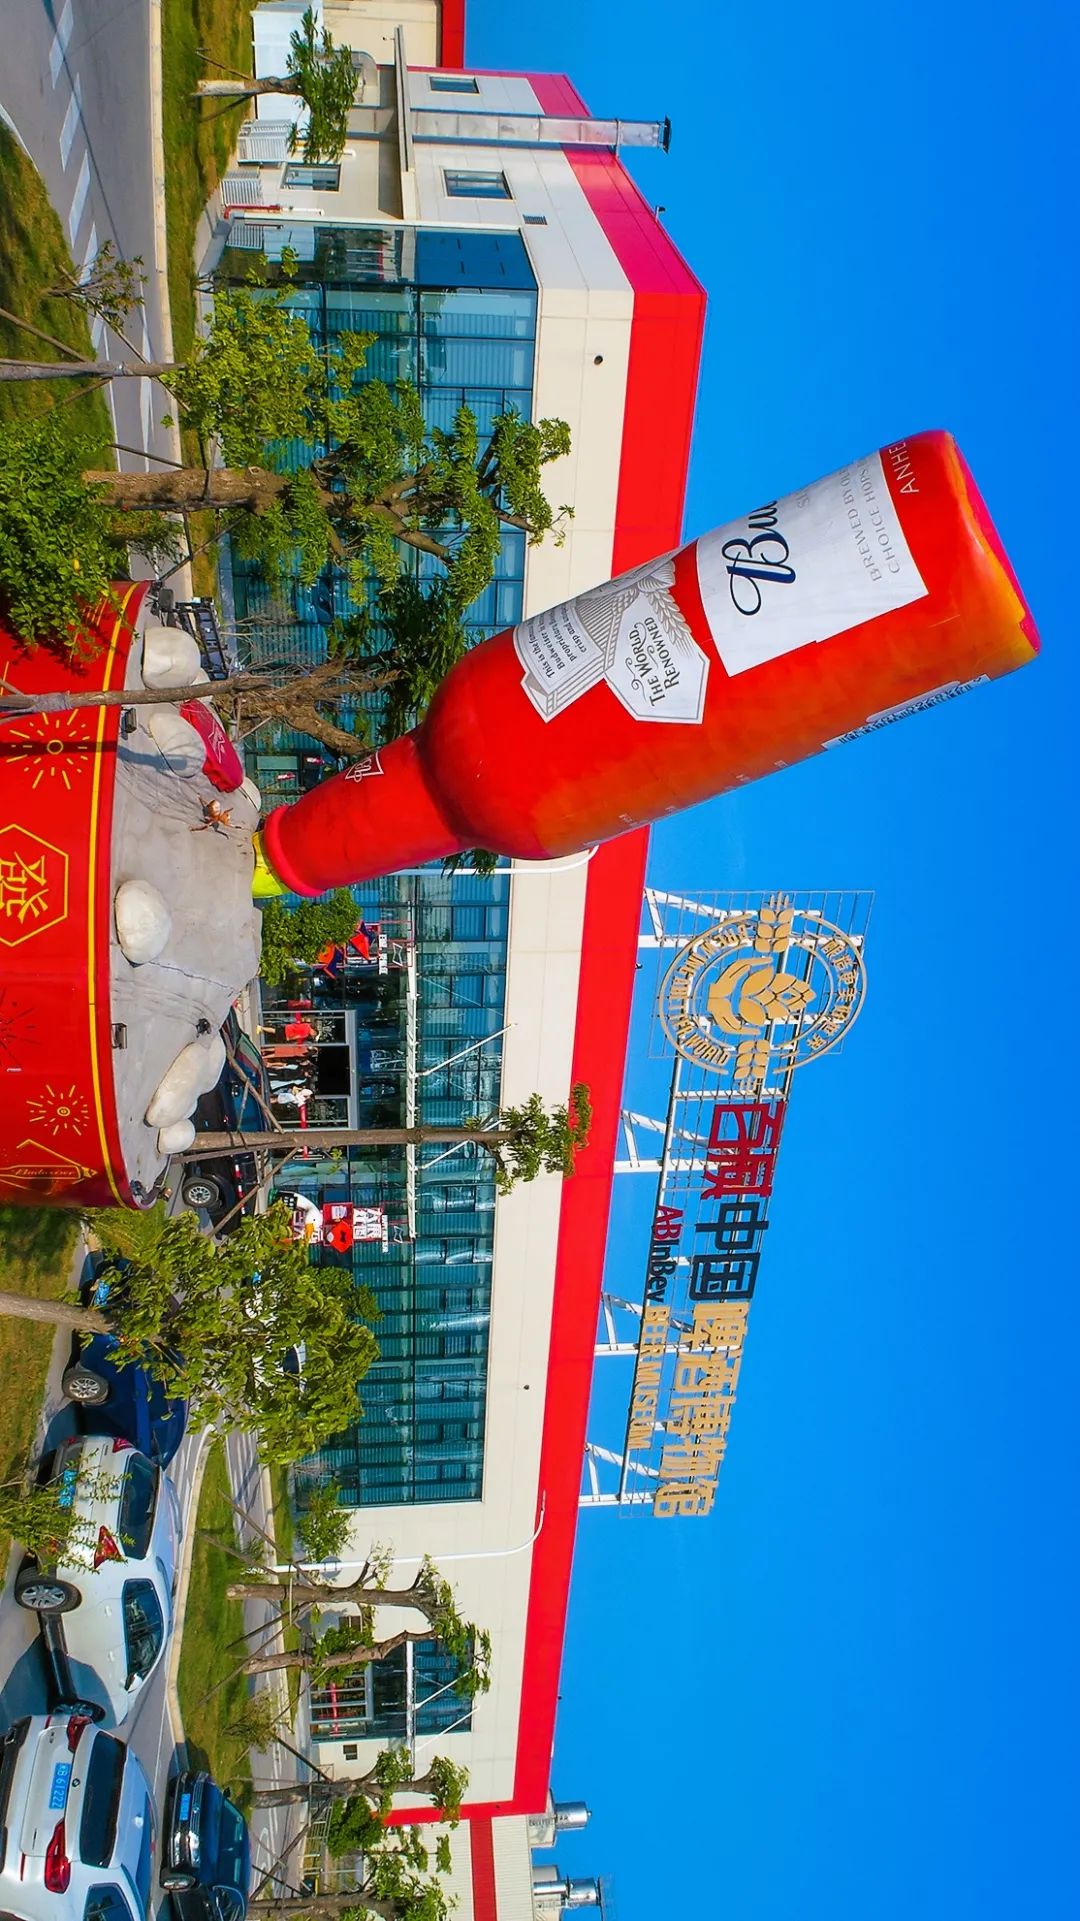 研学基地博物馆占地9000㎡百威(中国)啤酒博物馆这里拥有节水技术全球